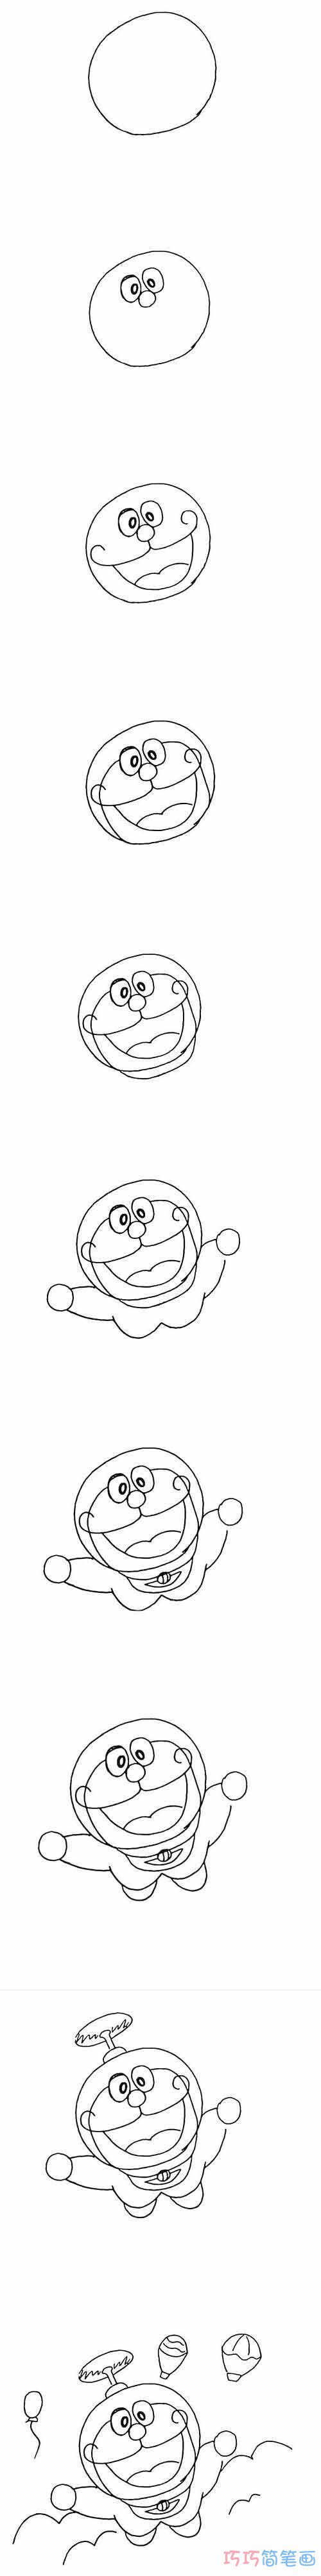 怎么画哆啦A梦详细步骤图简笔画教程涂色